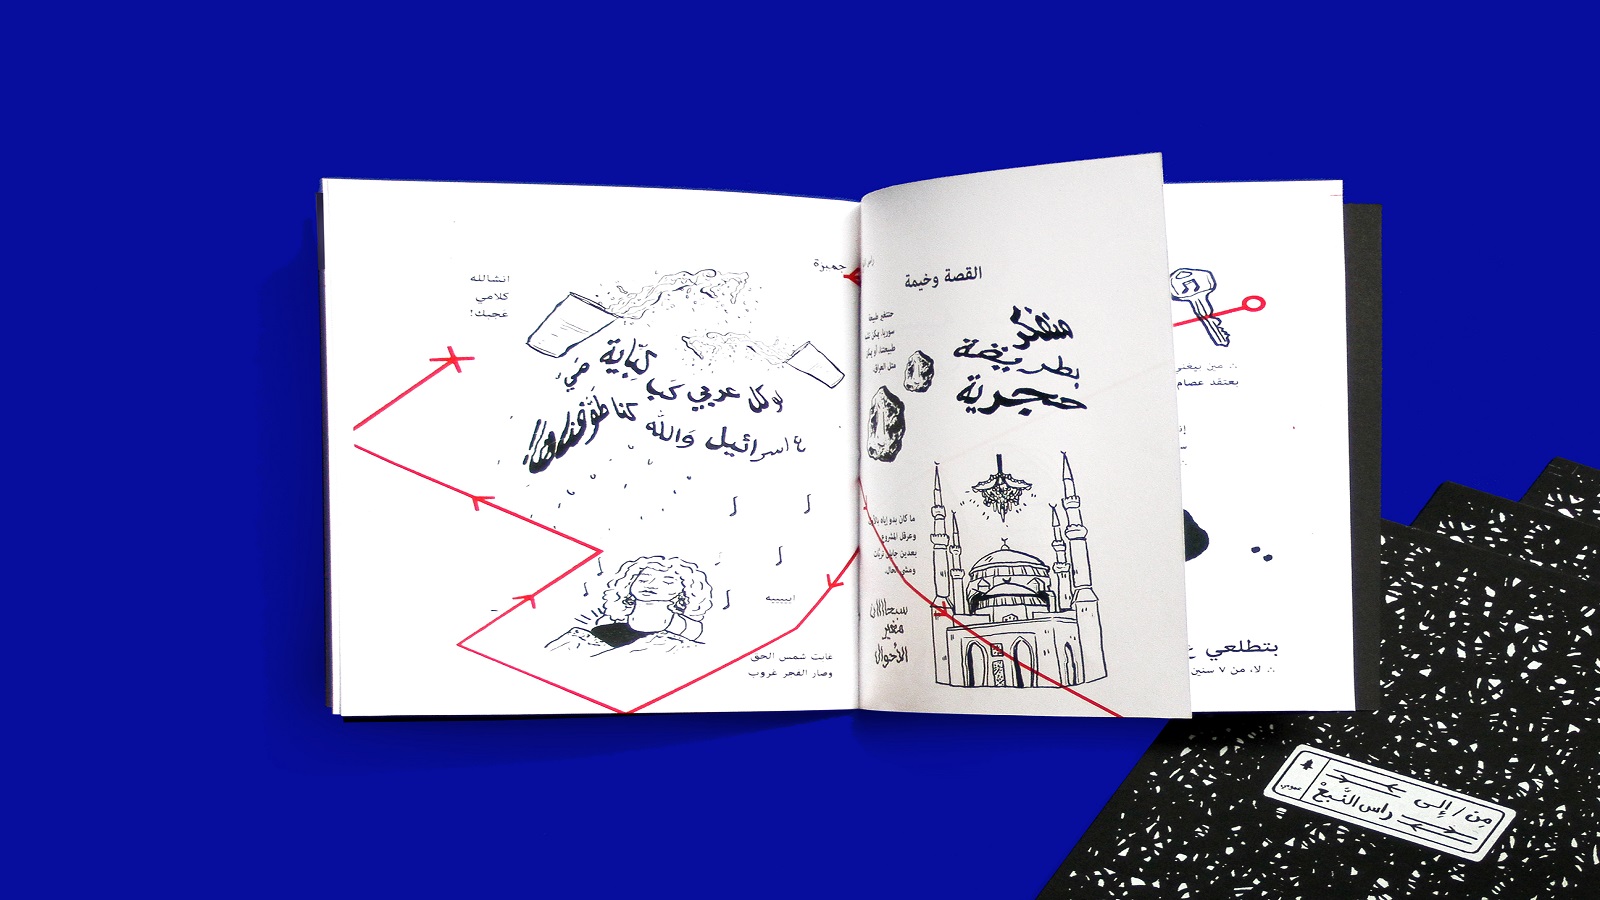 حكايات بيروتية وطباعية في معرض "طبعاً 2"